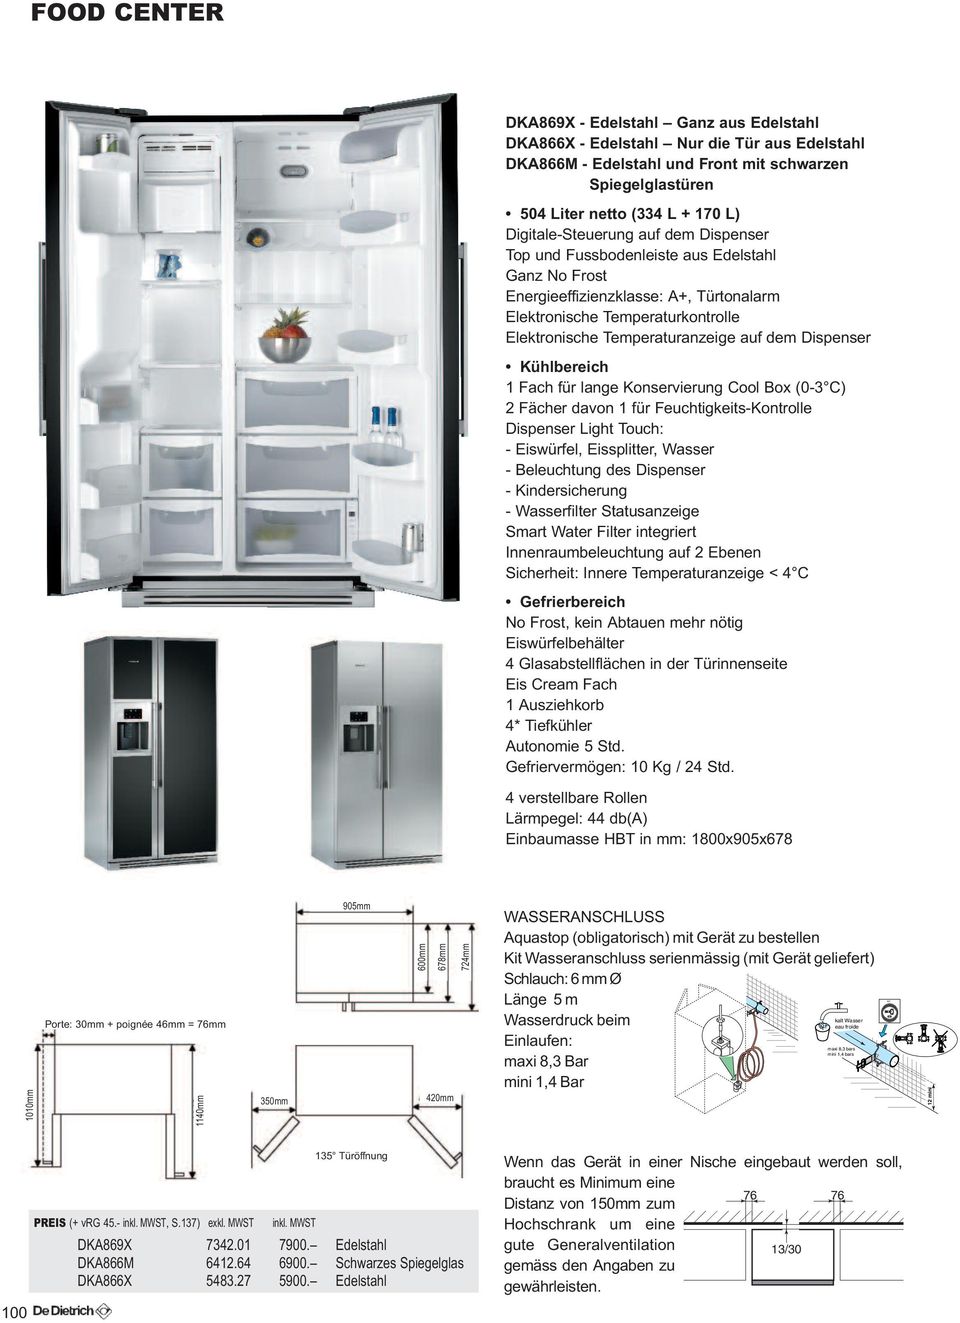 dem Dispenser Kühlbereich 1 Fach für lange Konservierung Cool Box (0-3 C) 2 Fächer davon 1 für Feuchtigkeits-Kontrolle Dispenser Light Touch: - Eiswürfel, Eissplitter, Wasser - Beleuchtung des